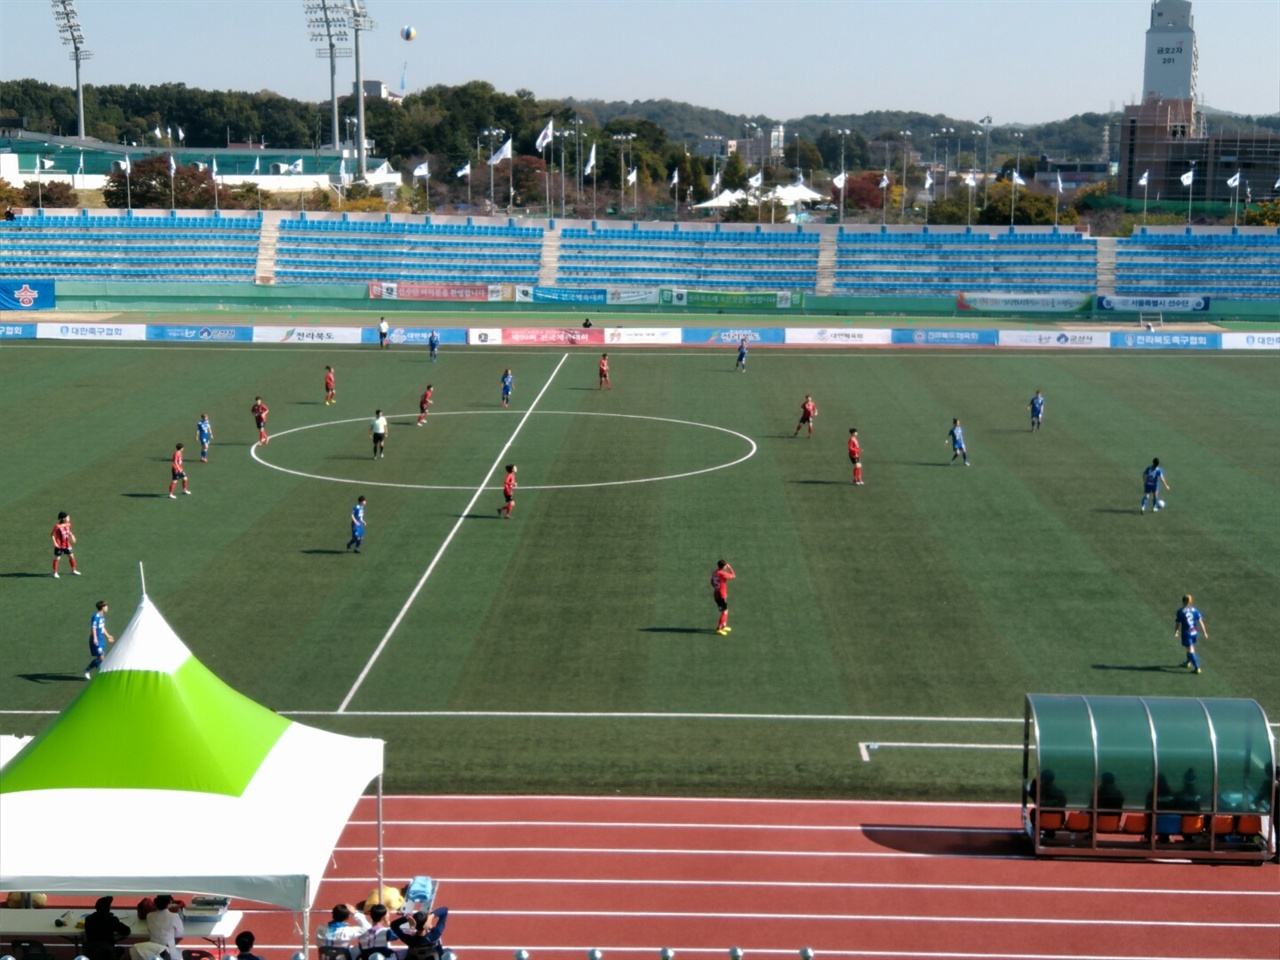  인천(푸른색 유니폼)과 서울의 경기 모습